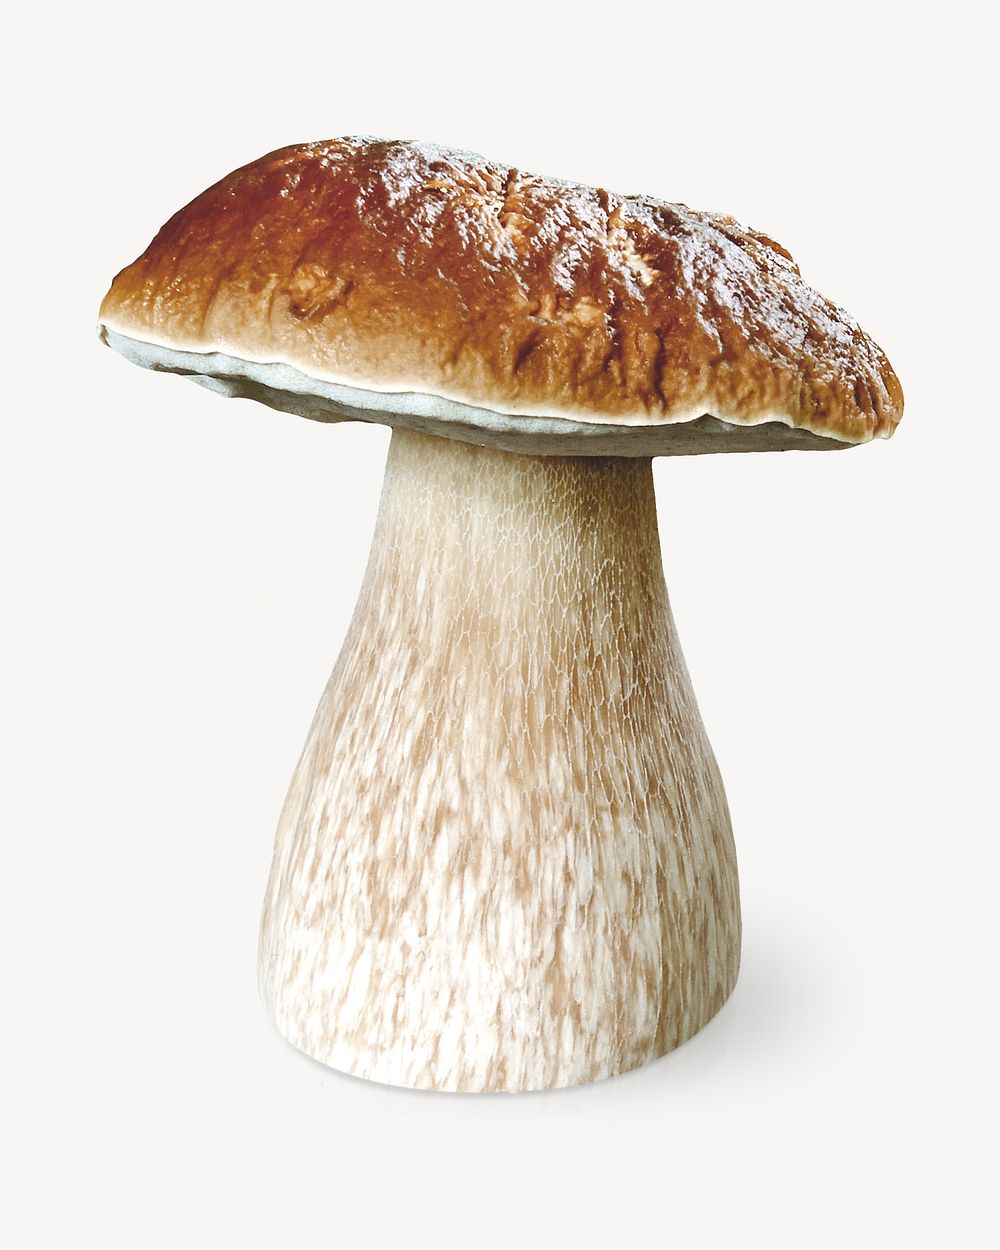 King Bolete mushroom isolated object on white